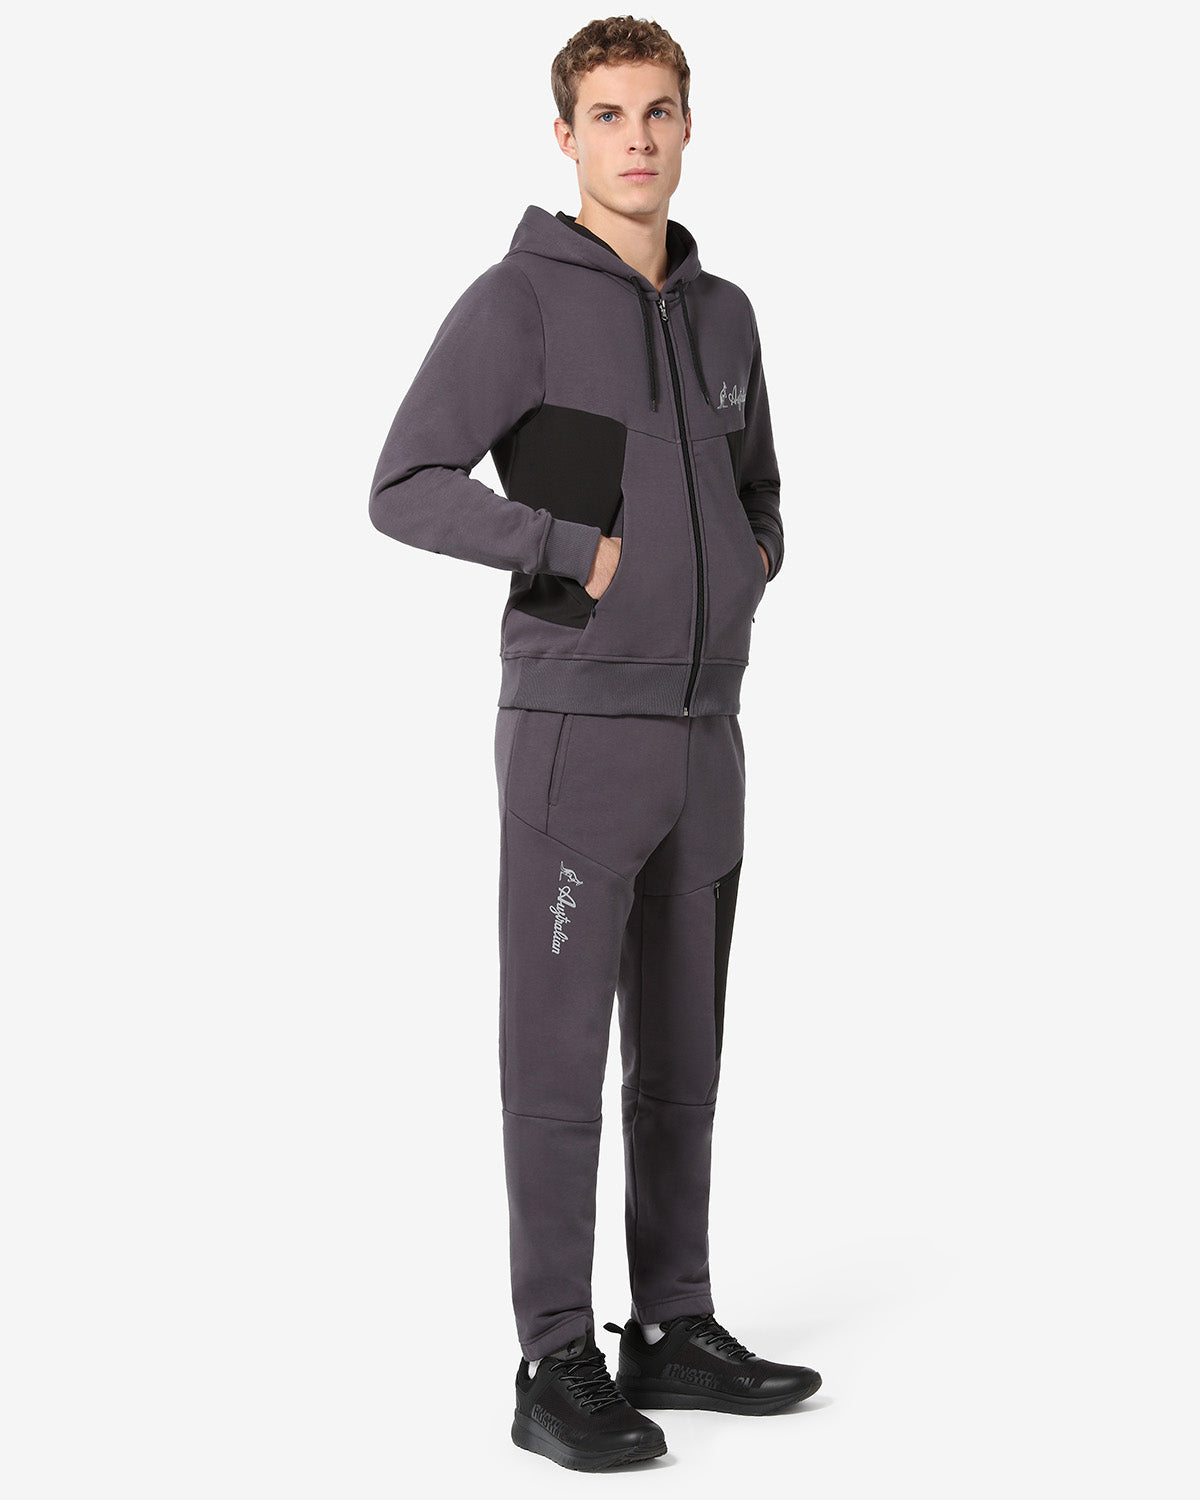 Tek Fleece Jacket: Australian Sportswear